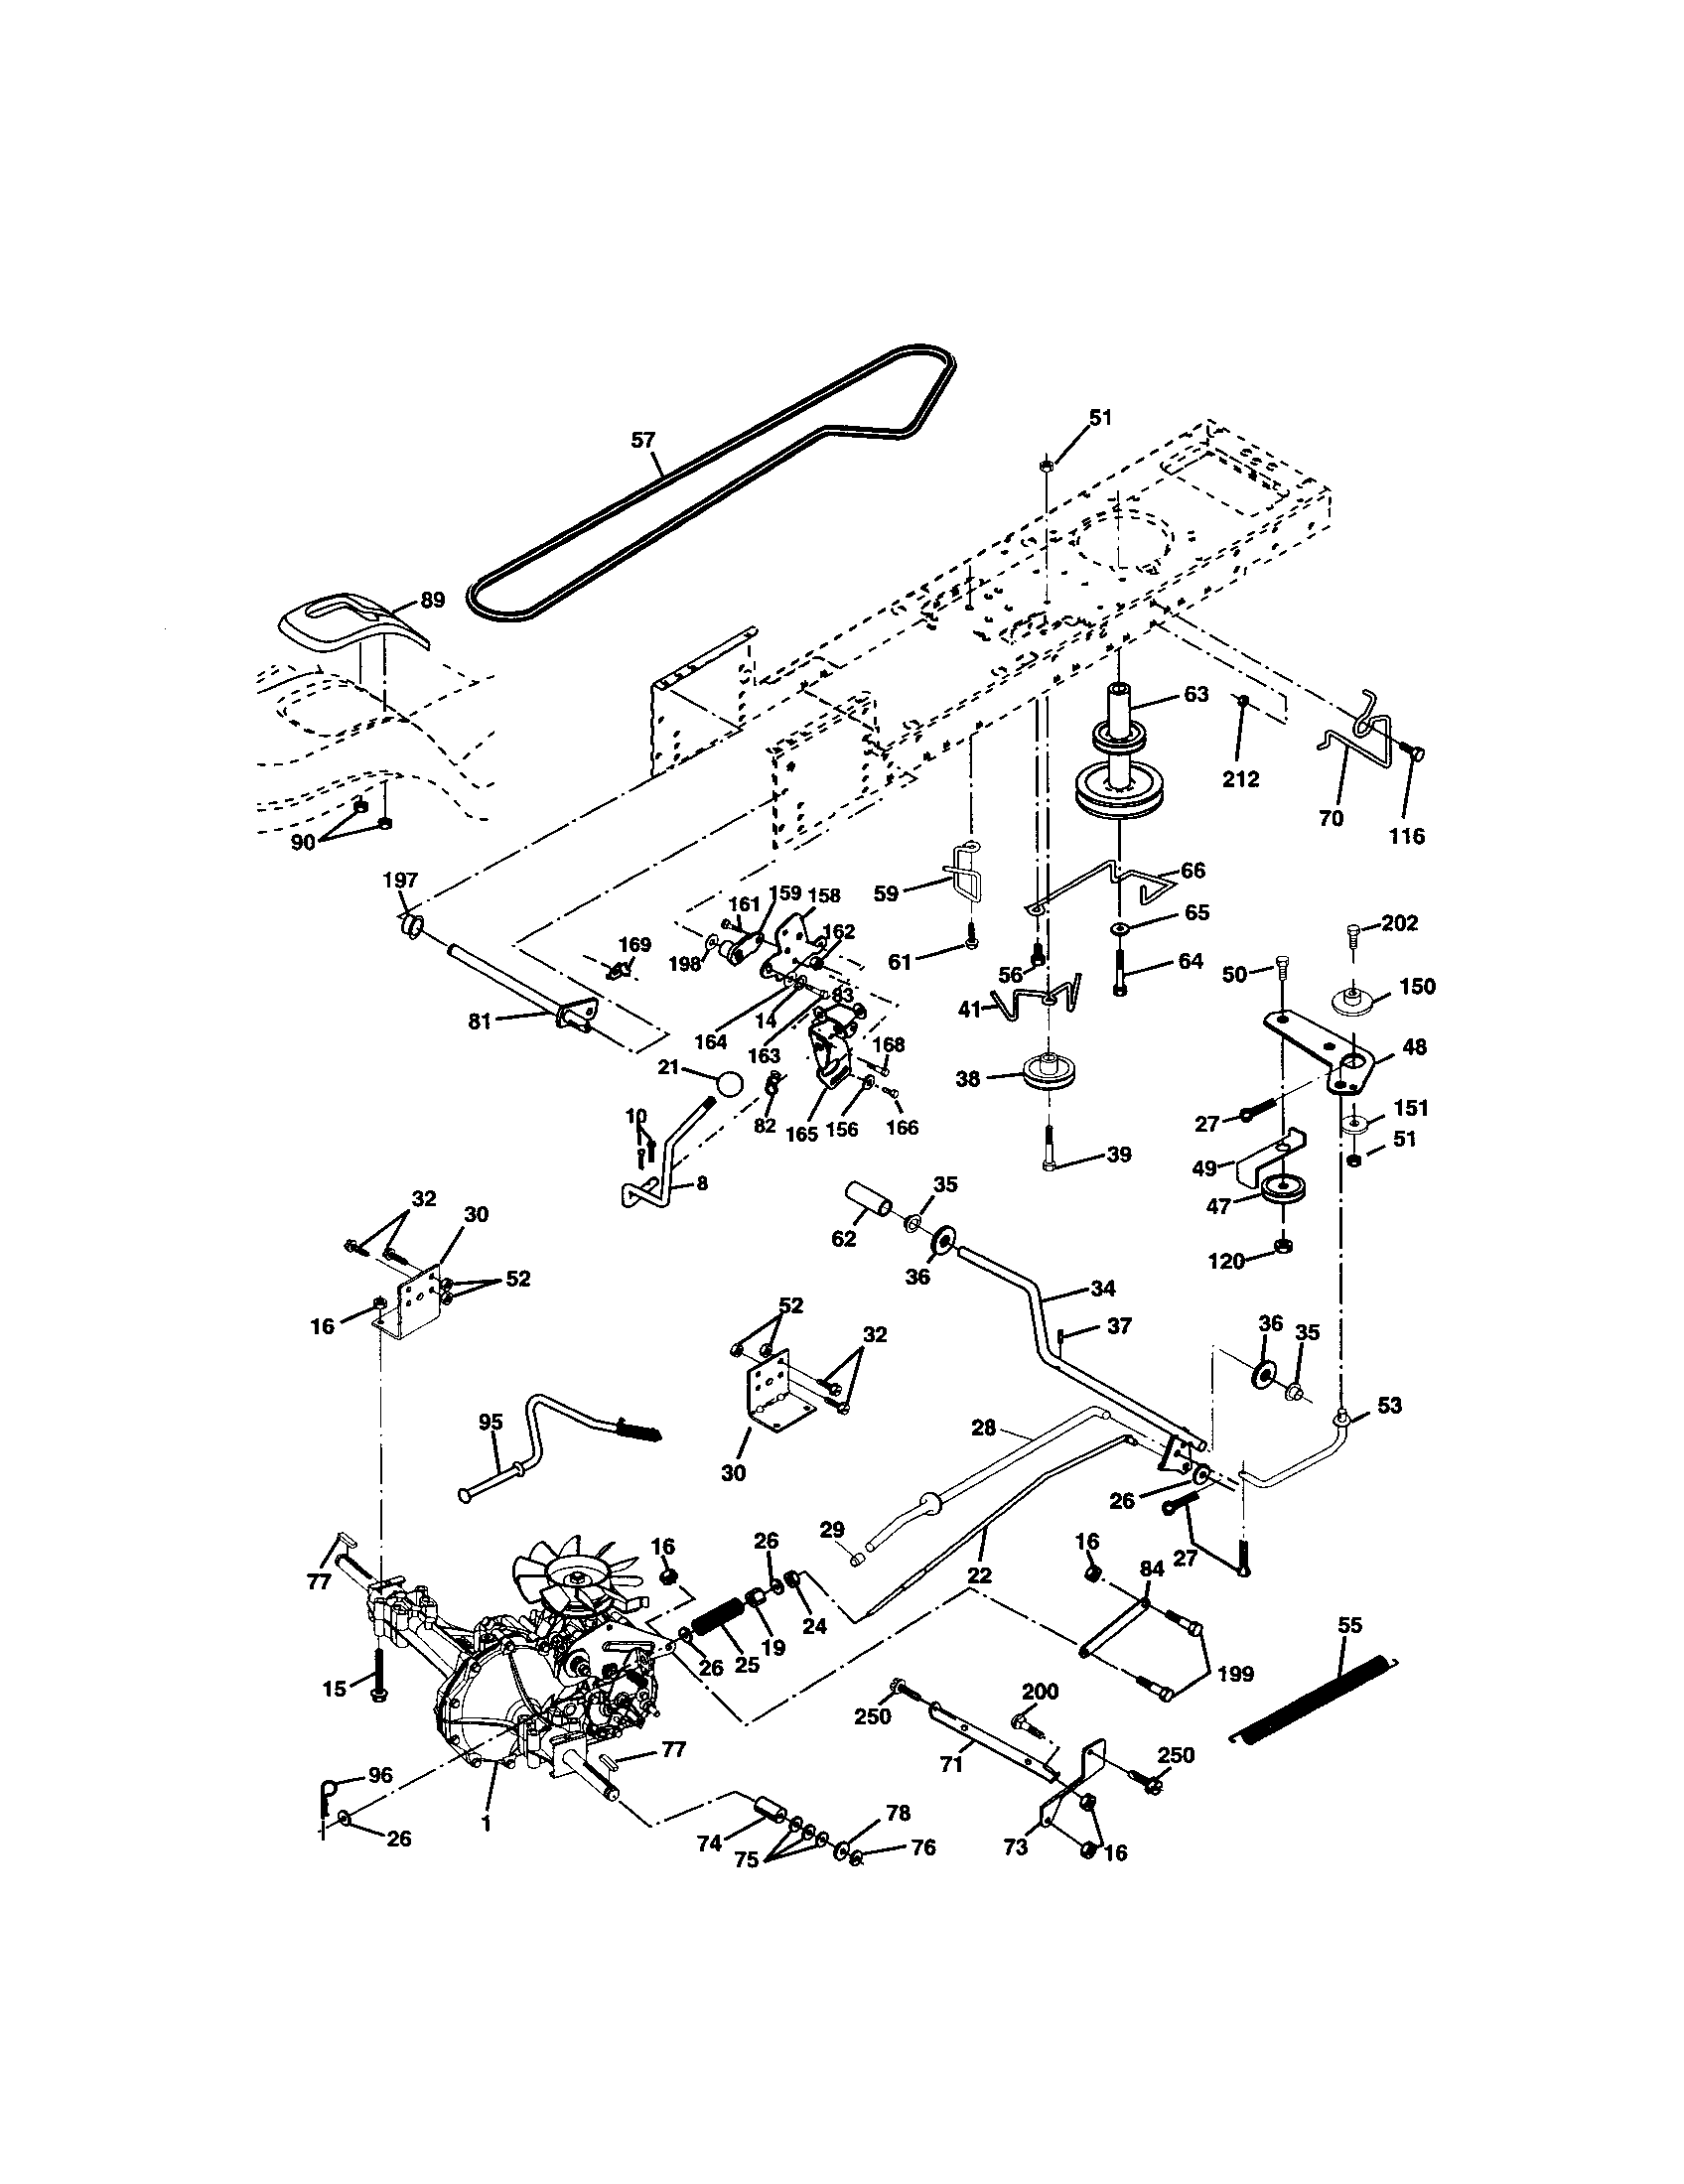 Craftsman Ltx 1000 Parts Diagram Diagram Resource Gallery